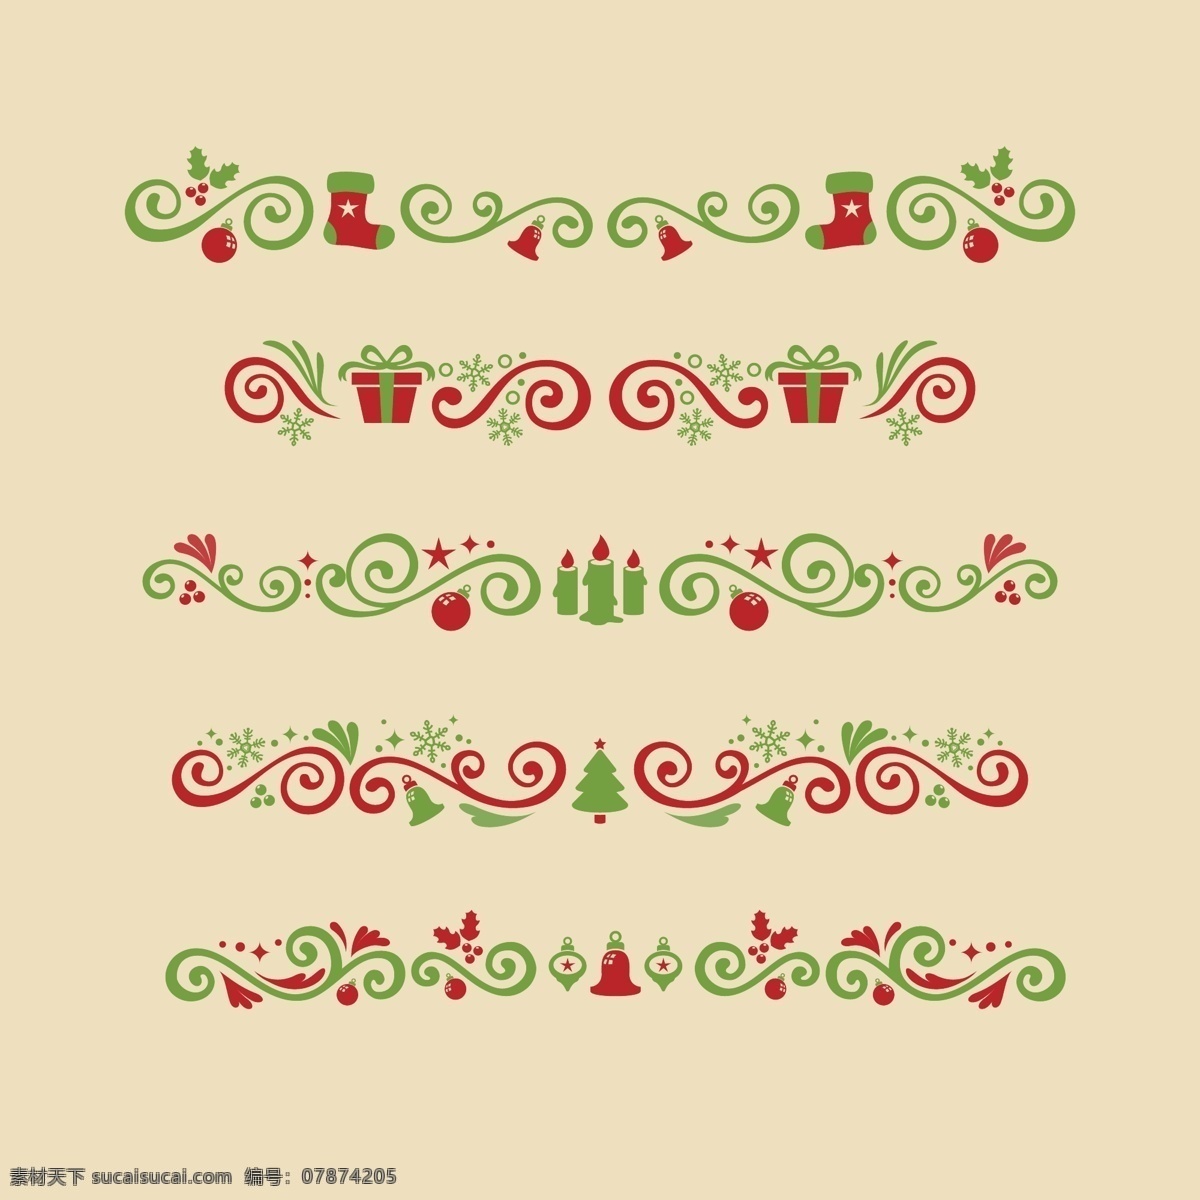 圣诞 装饰品 花纹 矢量 花边 圣诞节 底纹 矢量花纹 装饰 节日